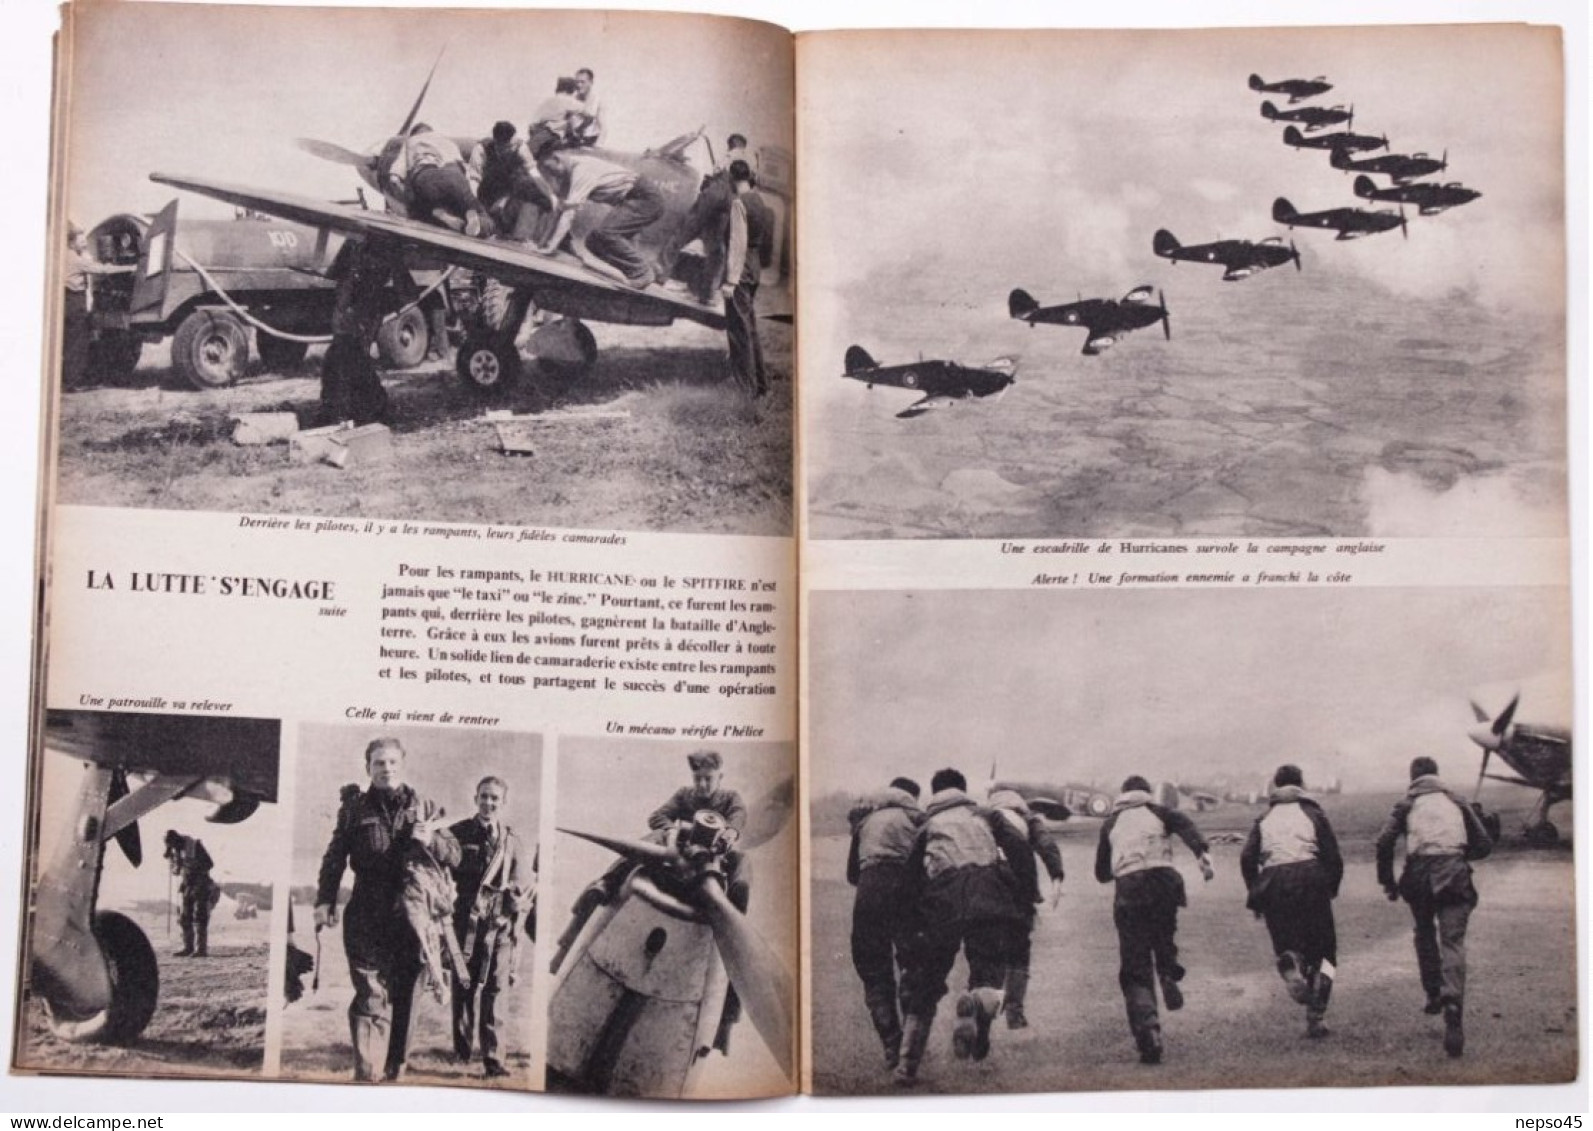 Le tournant de la Guerre.le R.A.F.première défaite allemande.Imprimé pour Service d'Information britannique.